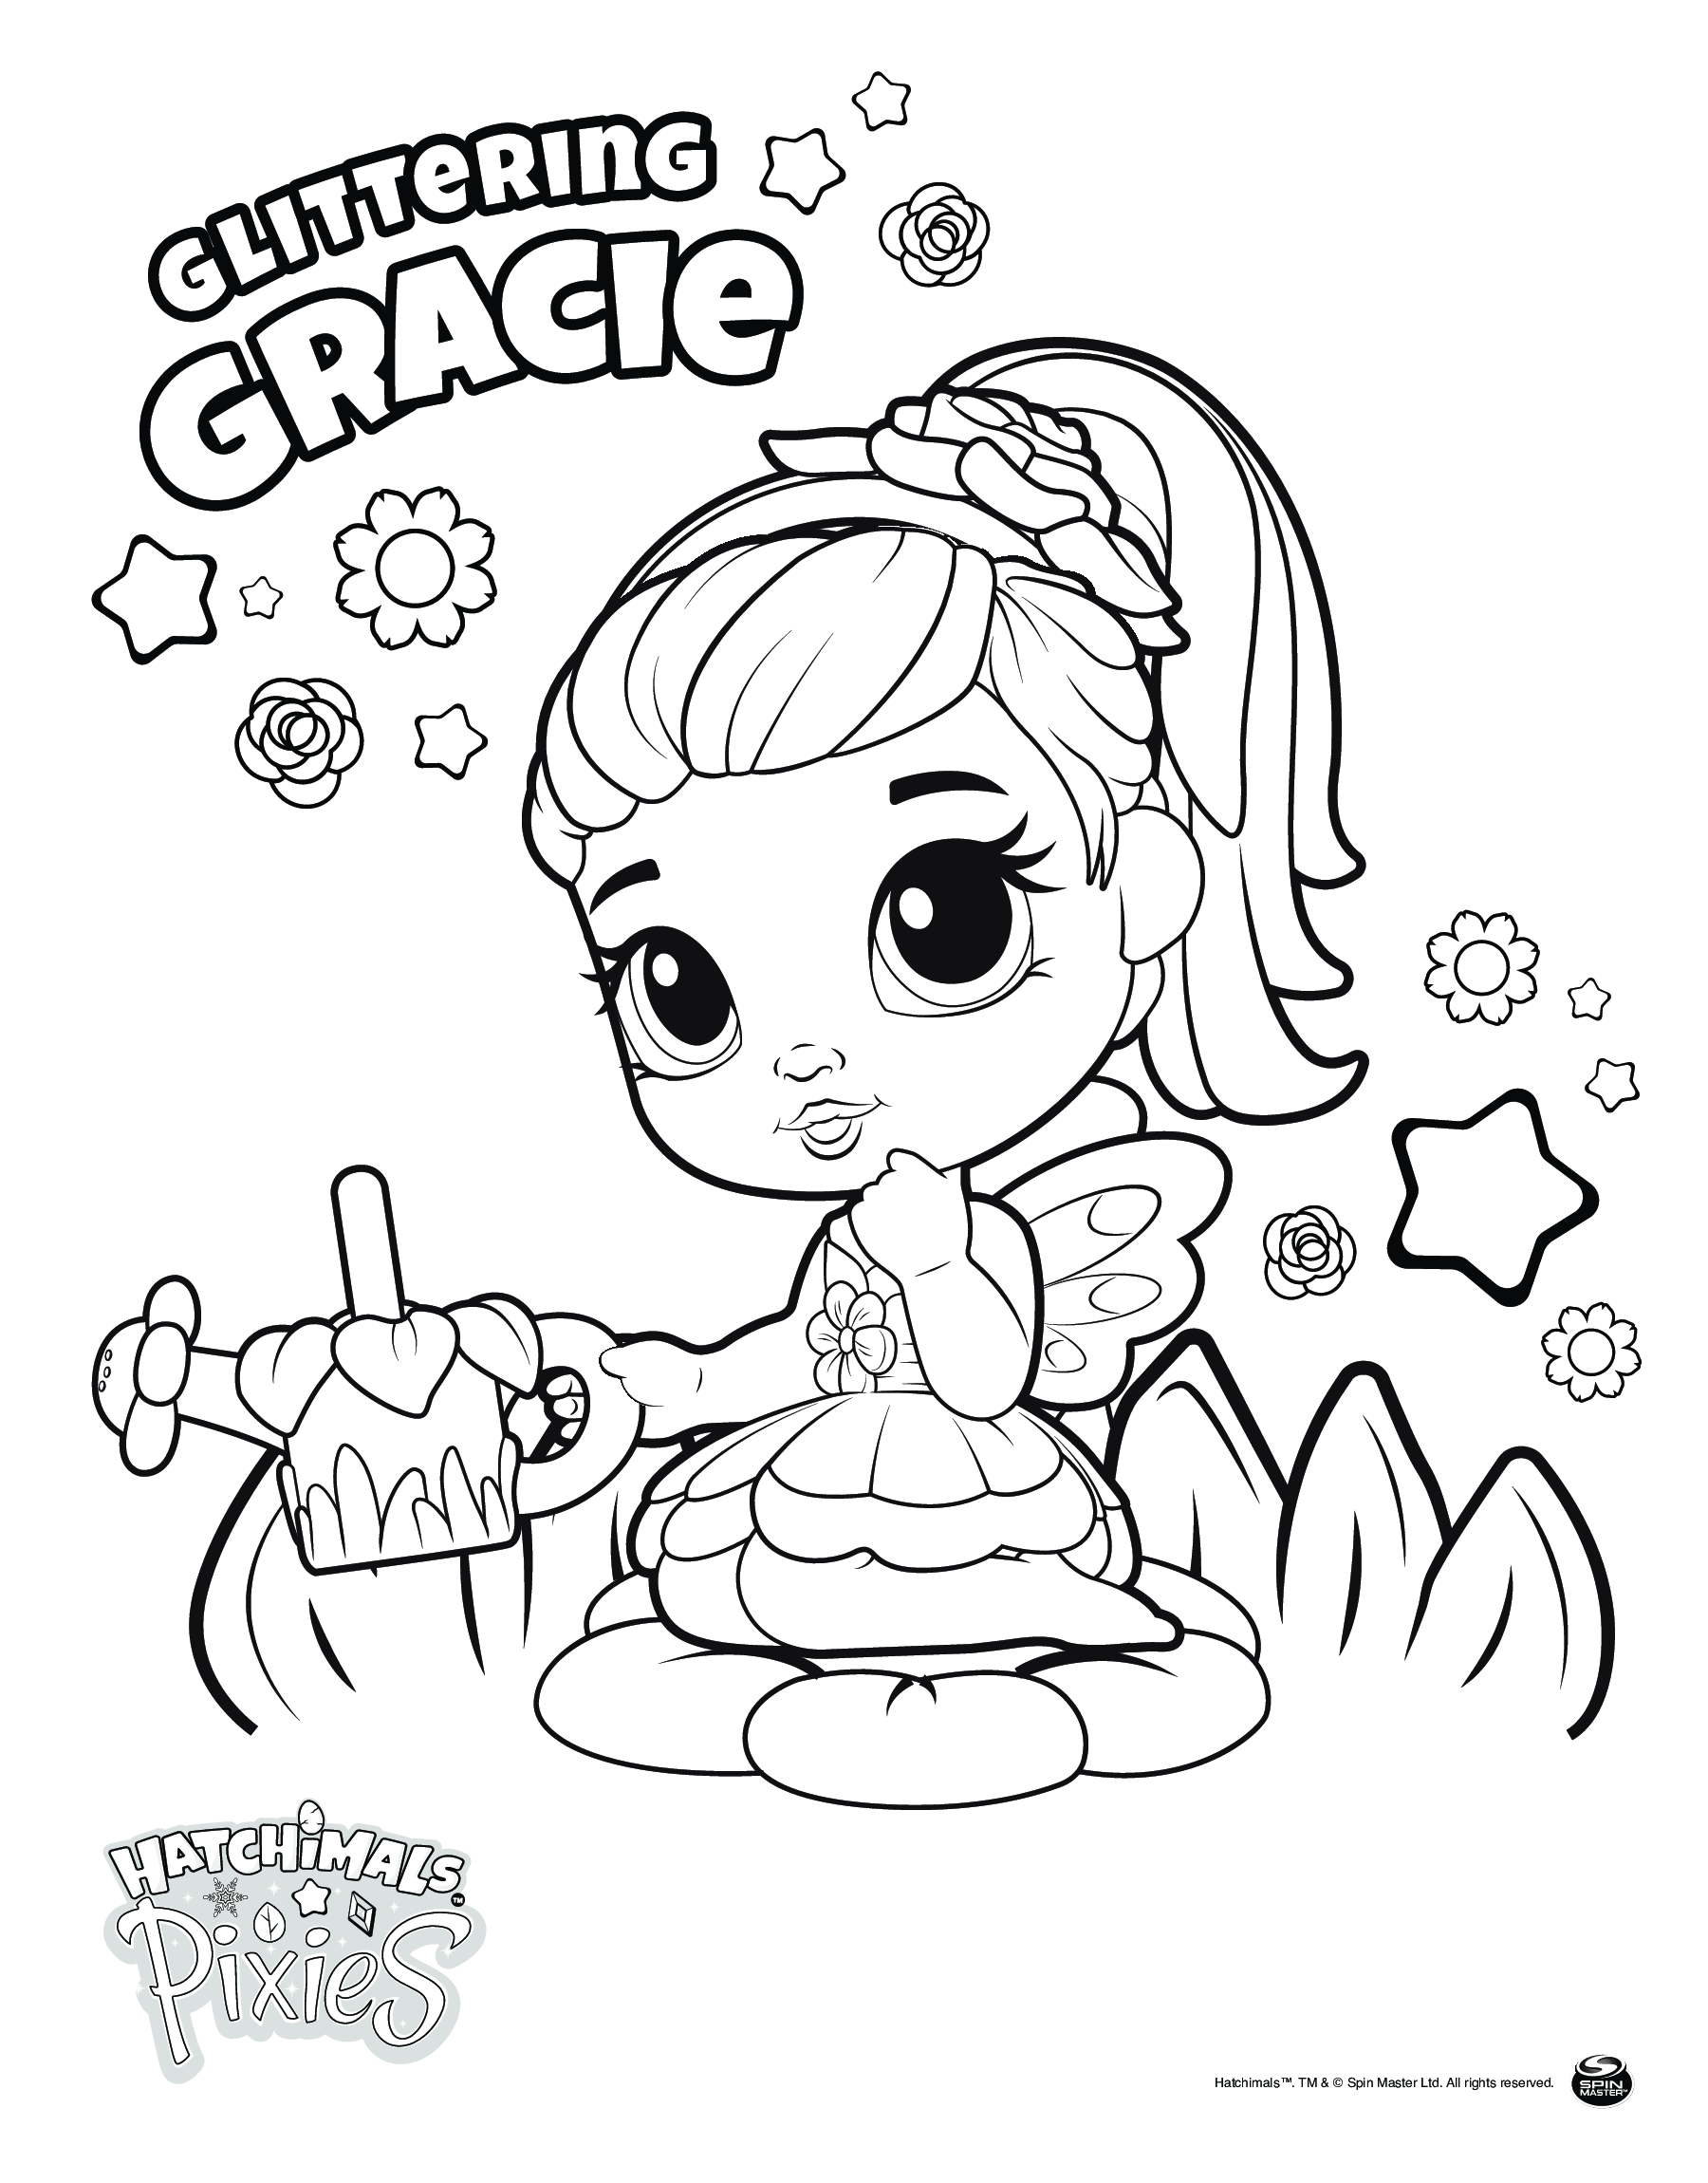   Hatchimals Pixies fille Gracie, fille avec cupcake 